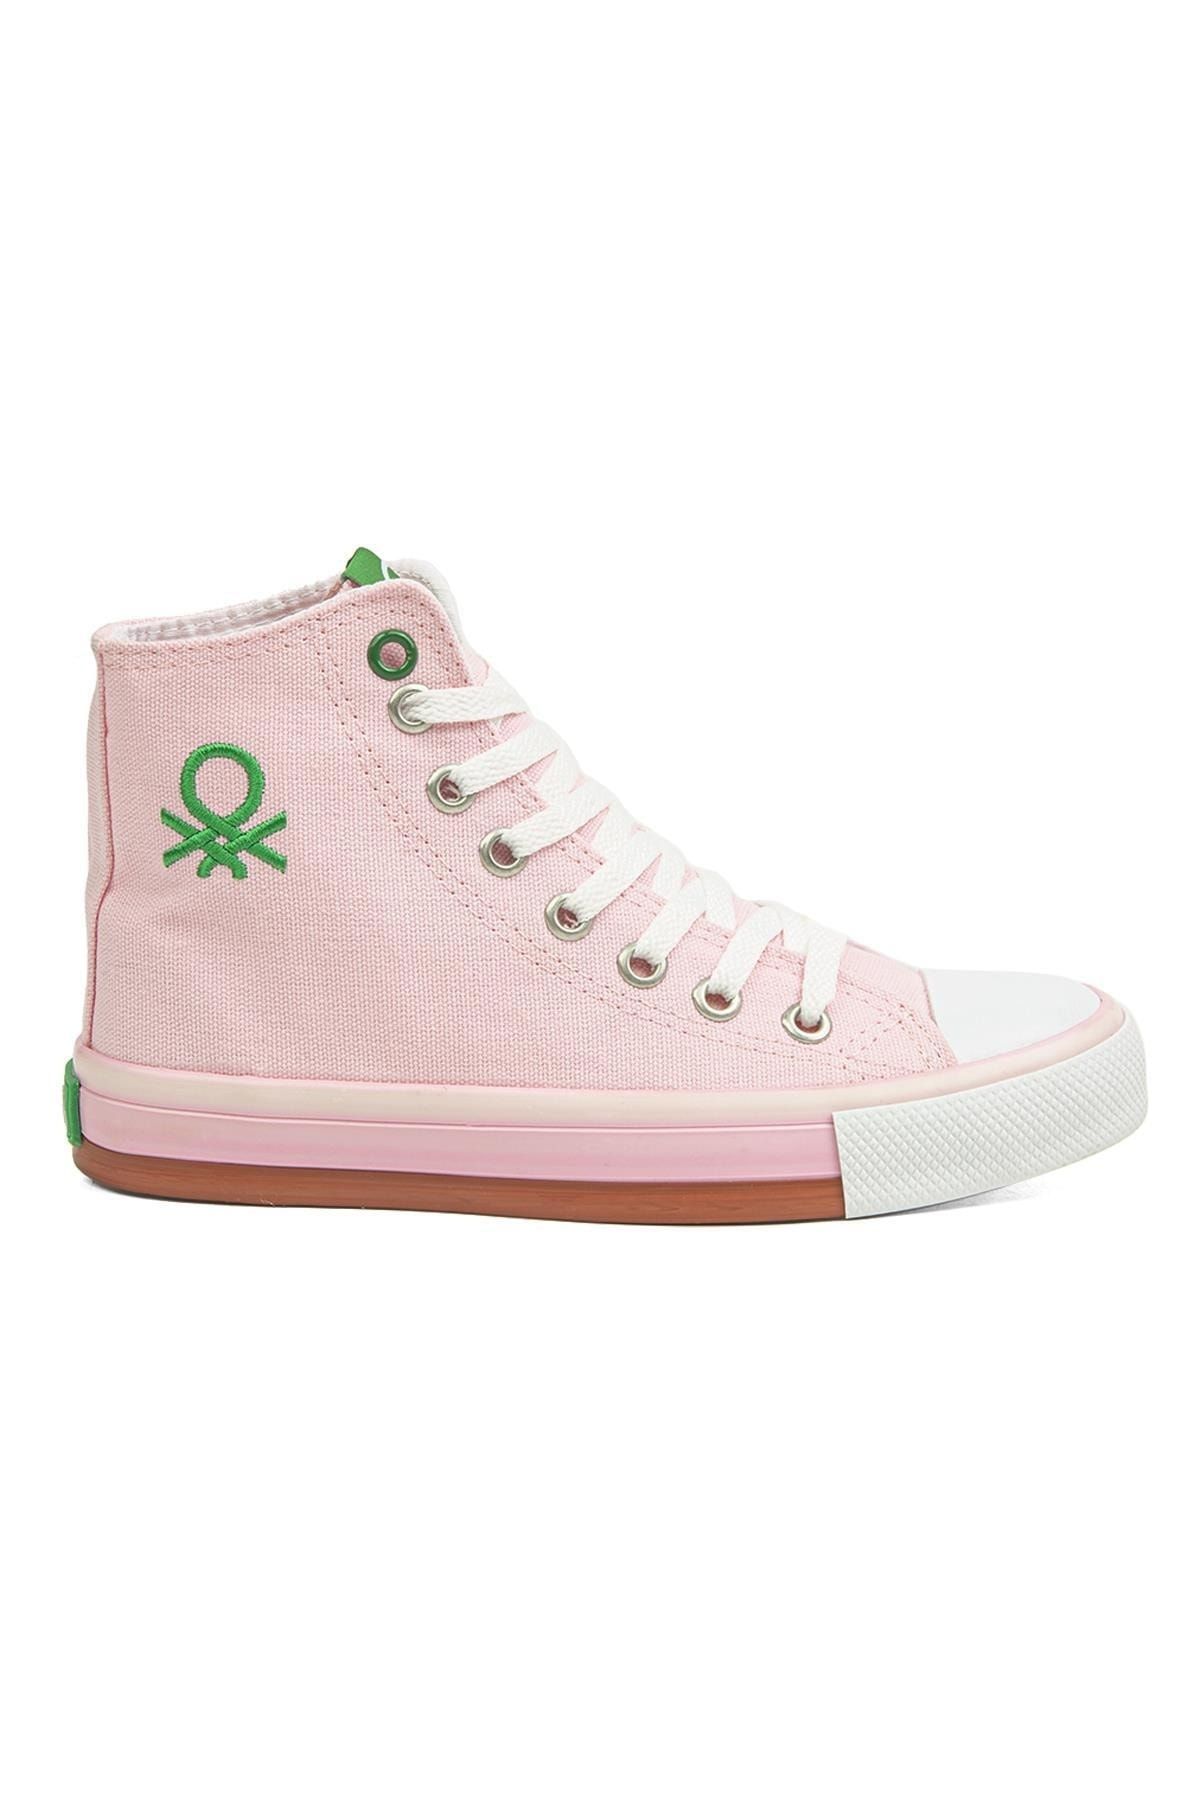 Benetton ® | Bn-30189 - 3374 Pembe - Kadın Spor Ayakkabı